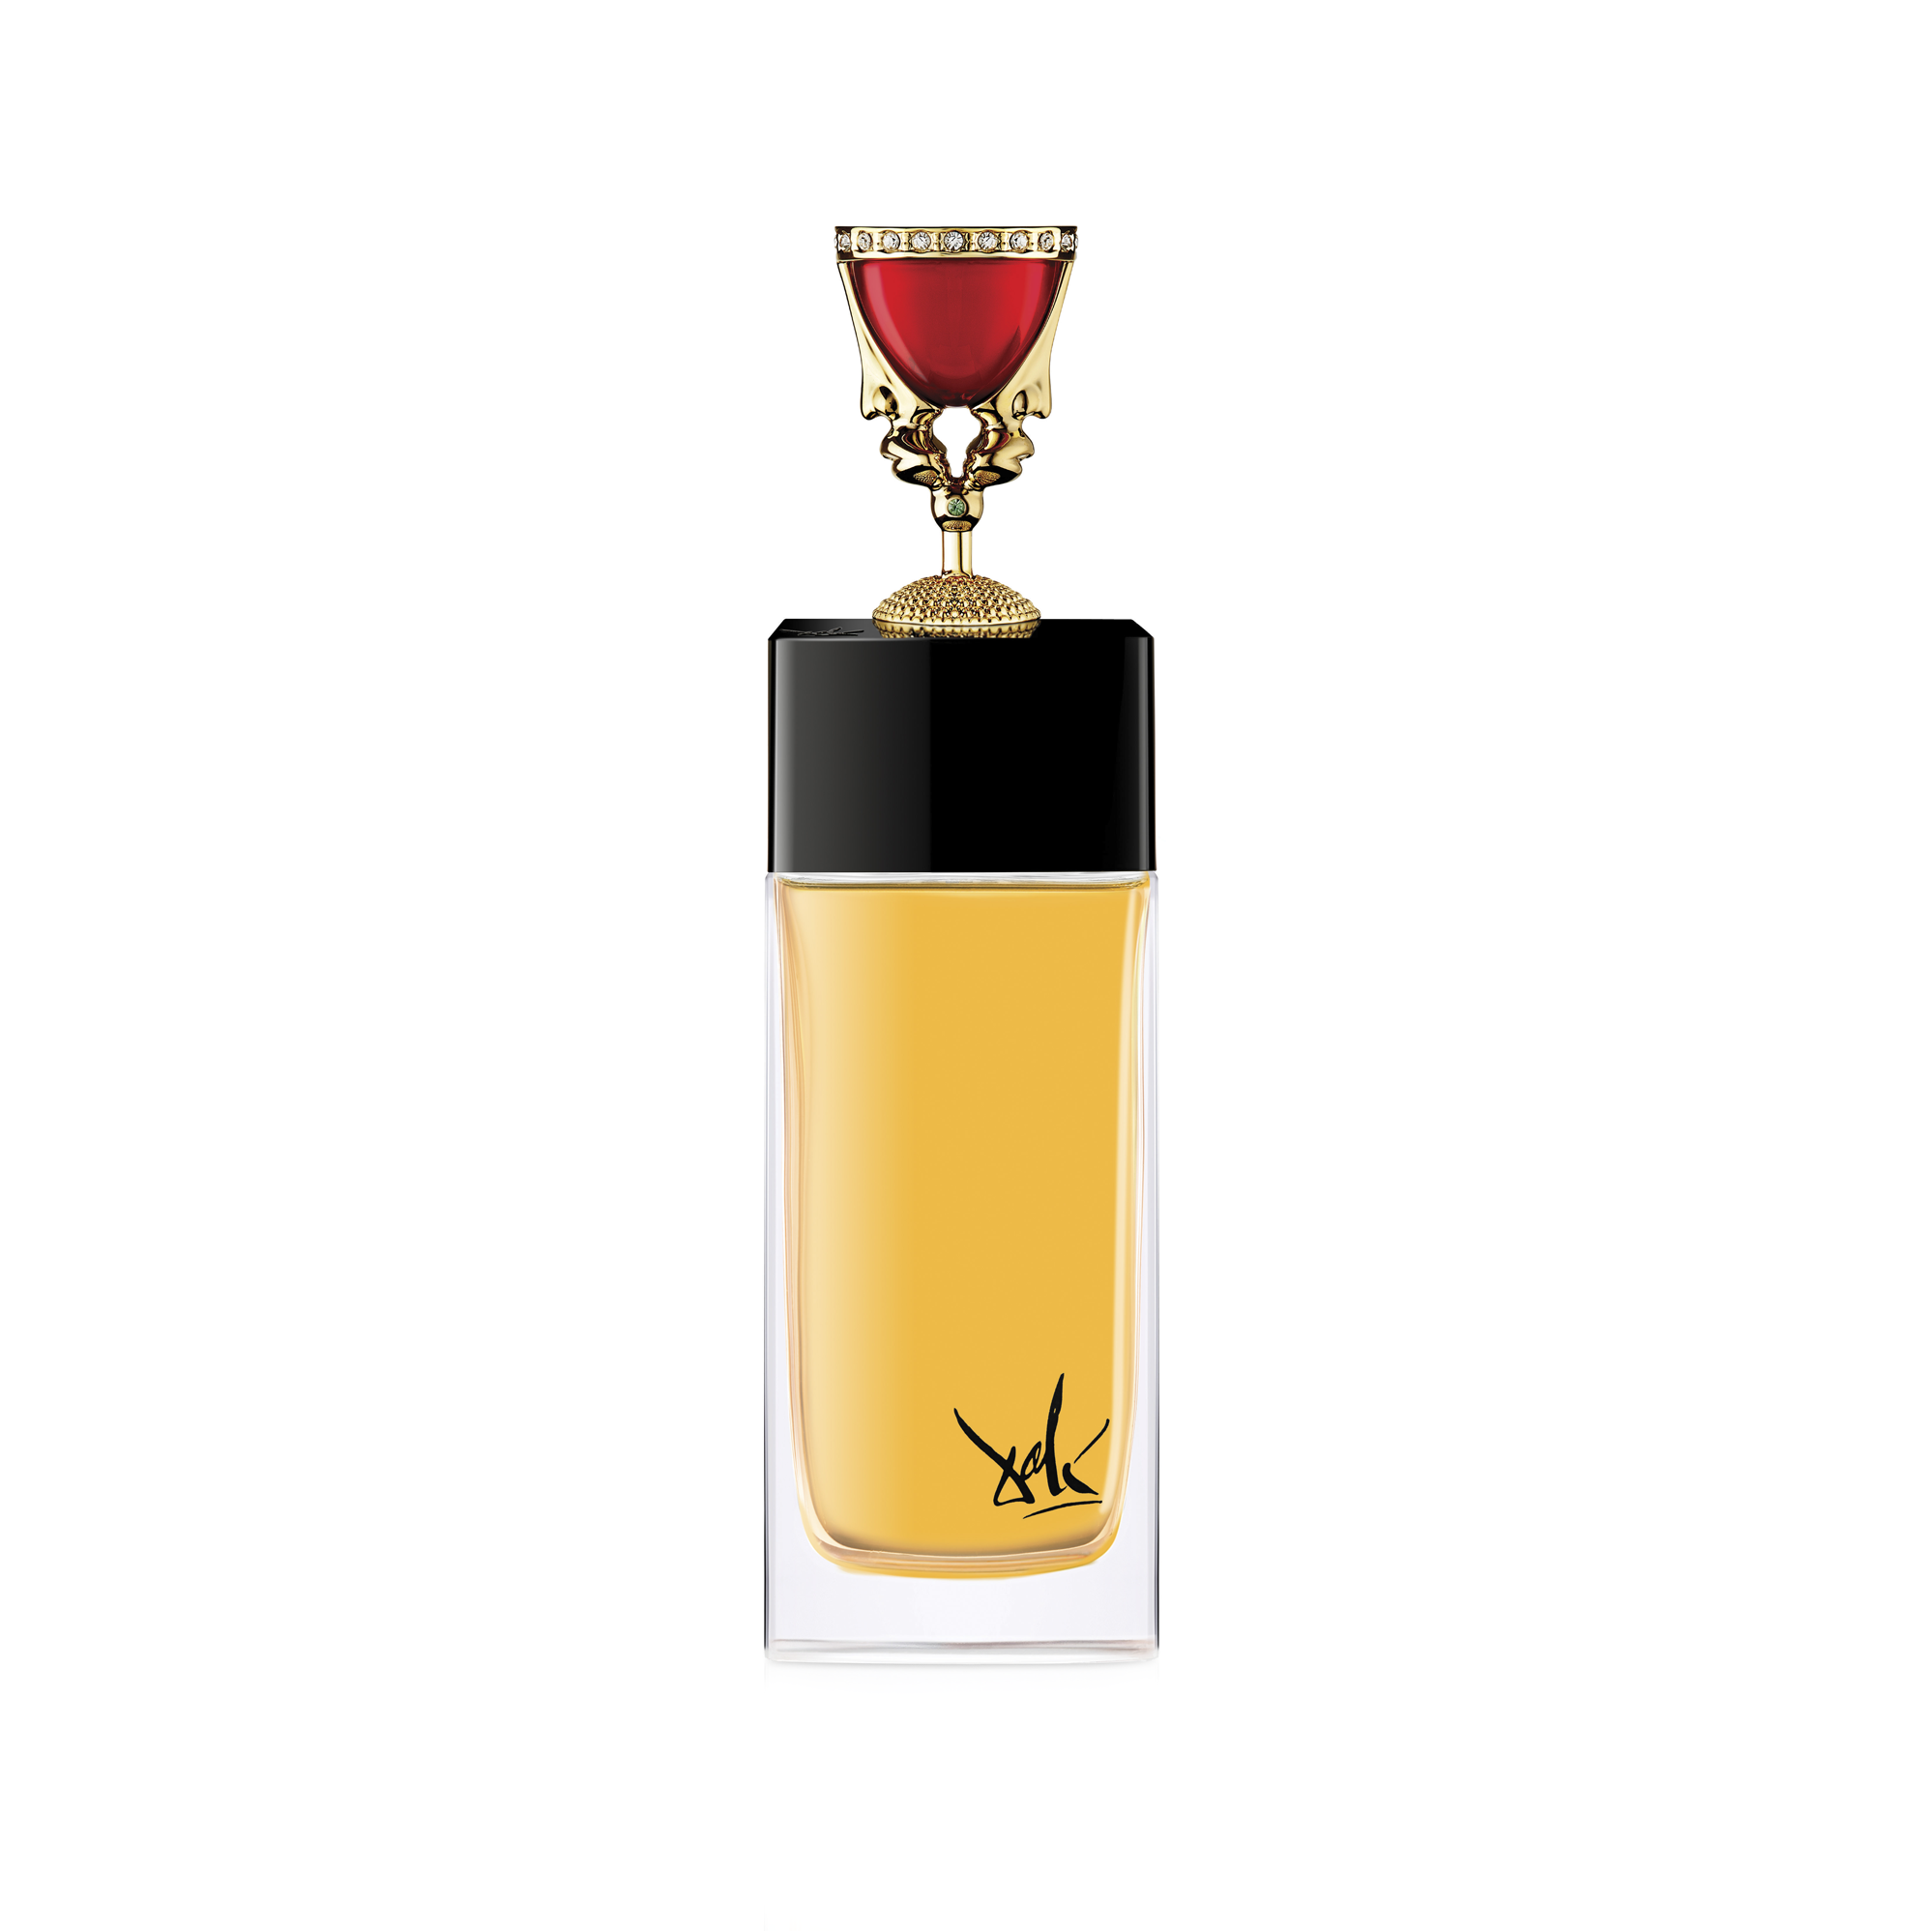 The Chalice 100ml Eau de Parfum Bottle by Dalí Haute Parfumerie